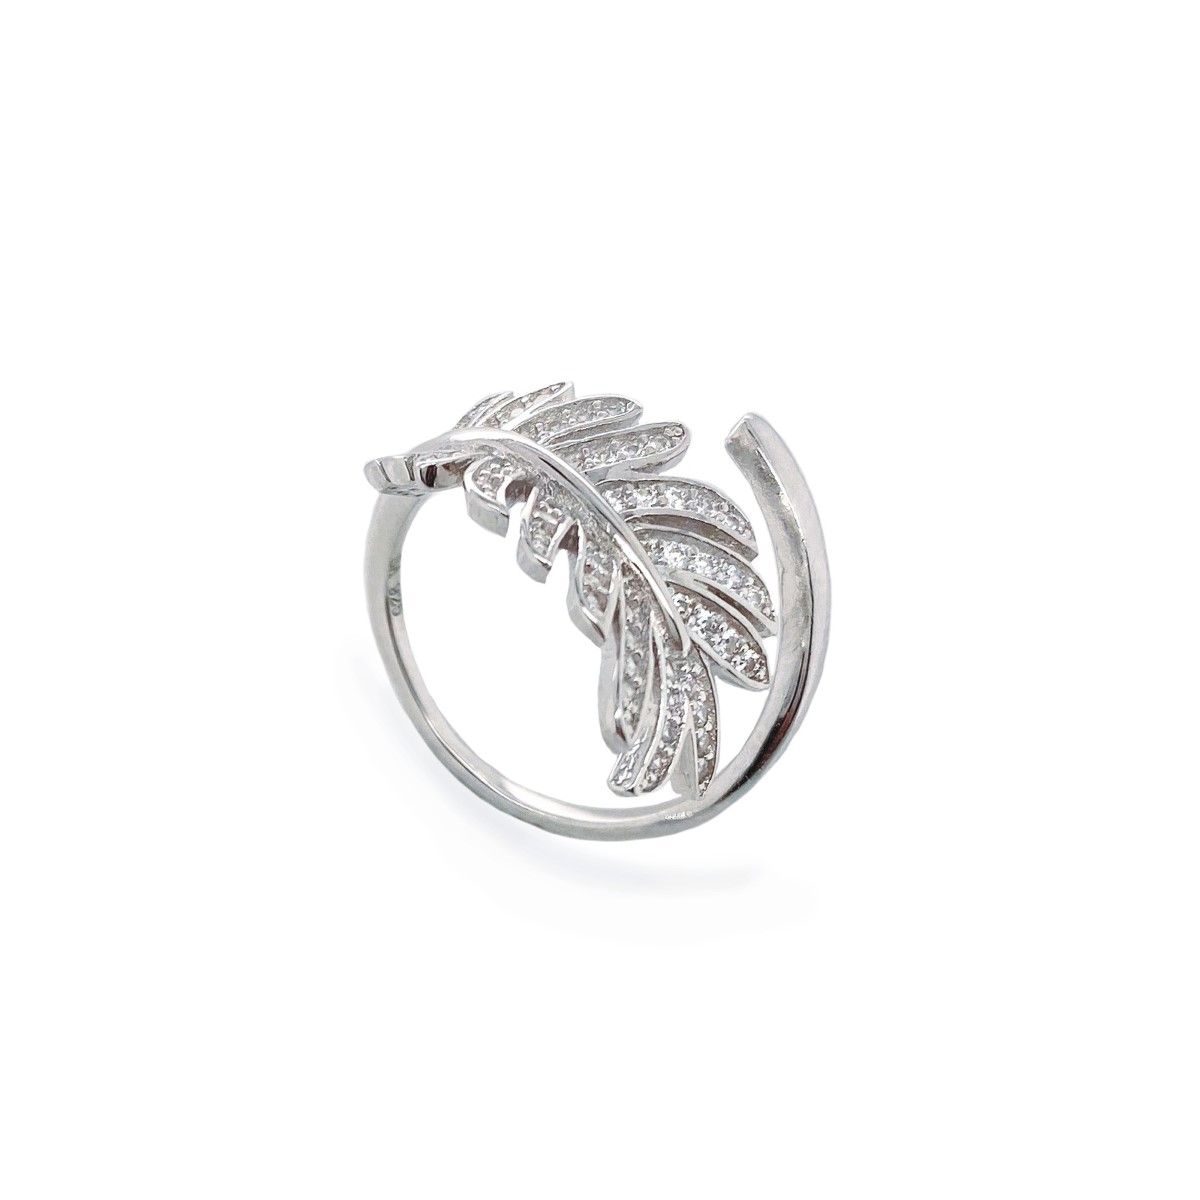 Adjustable Sterling Silver Crystal Fern Leaf Ring